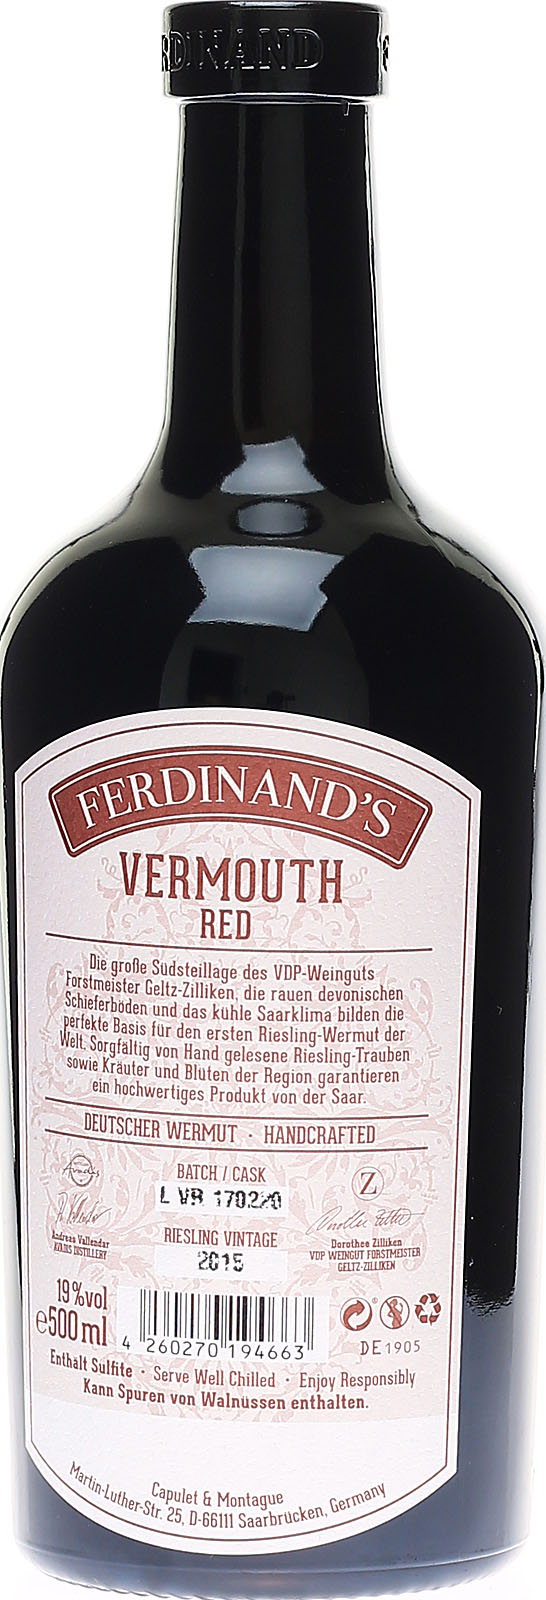 aus Red Wermut Vermouth, Ferdinand\'s hochwertiger Deuts